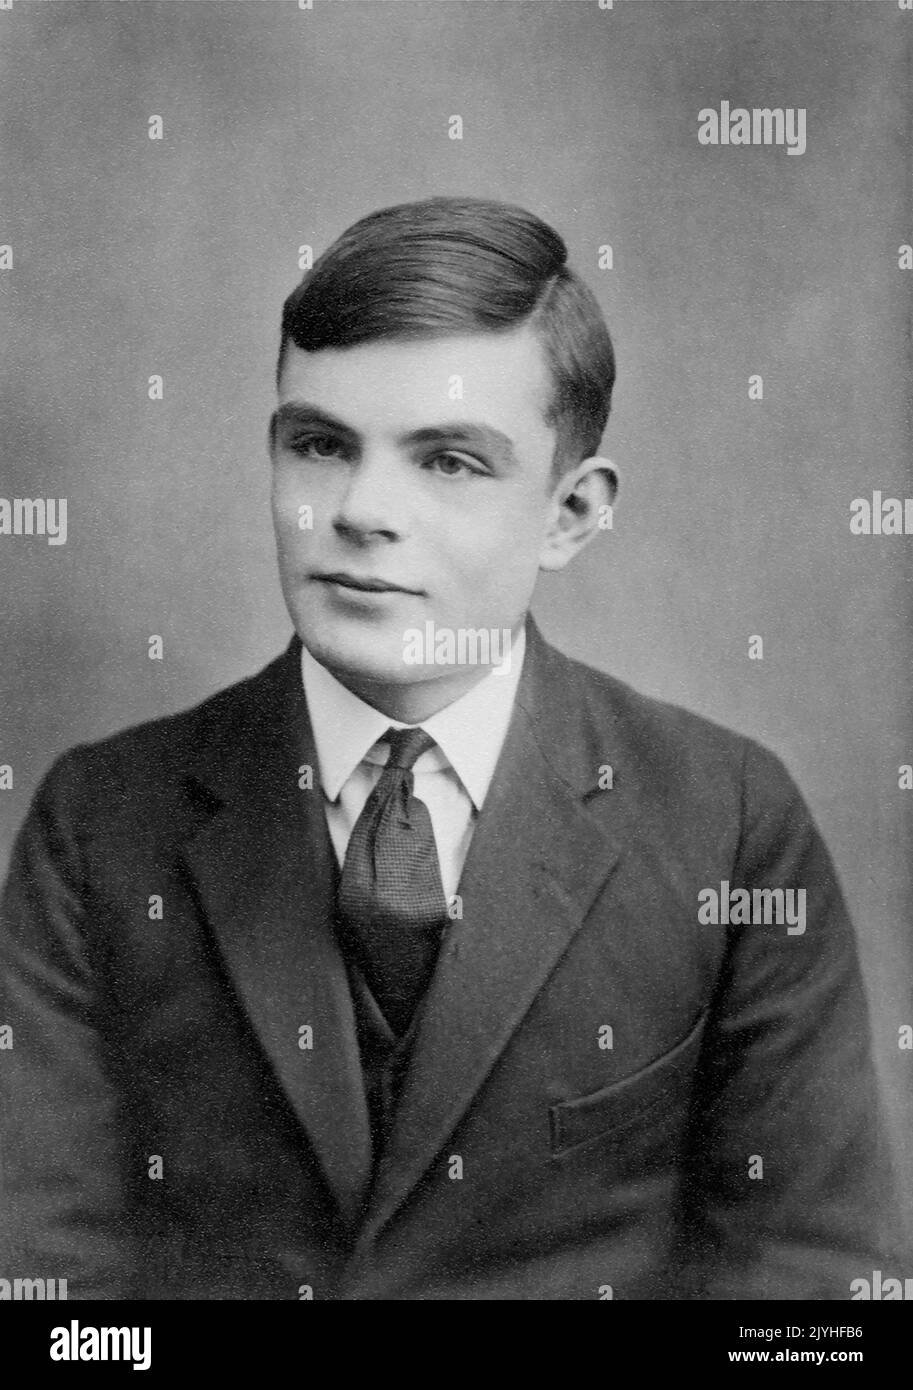 Royaume-Uni: Alan Turing (1912-1954), informaticien et cryptologue, qui a contribué à briser le code machine « énigme » de l'Allemagne pendant la Seconde Guerre mondiale, c. 1928. Alan Mathison Turing était un informaticien, mathématicien, logicien, cryptanalyste, philosophe, biologiste mathématique et coureur de marathon et d'ultra-distance. Il a été très influent dans le développement de l'informatique. Banque D'Images